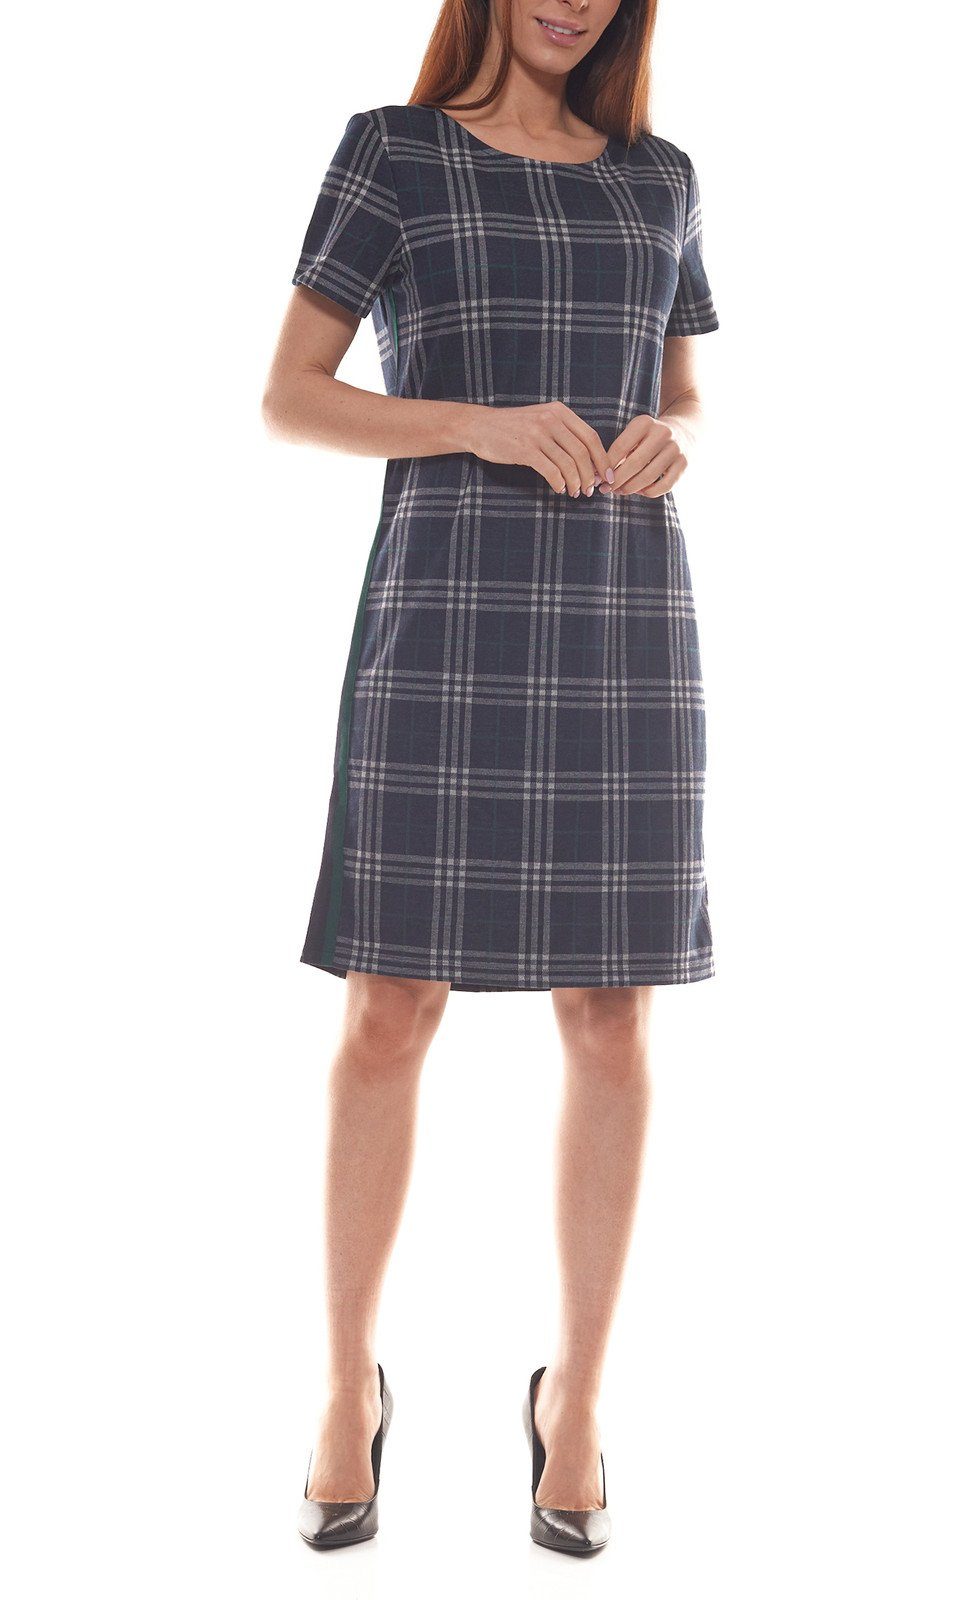 Aniston by BAUR Karokleid »Aniston SELECTED Karo-Kleid klassisches Damen  Rundhals-Kleid mit Galonstreifen Midi-Kleid Schwarz/Weiß« online kaufen |  OTTO